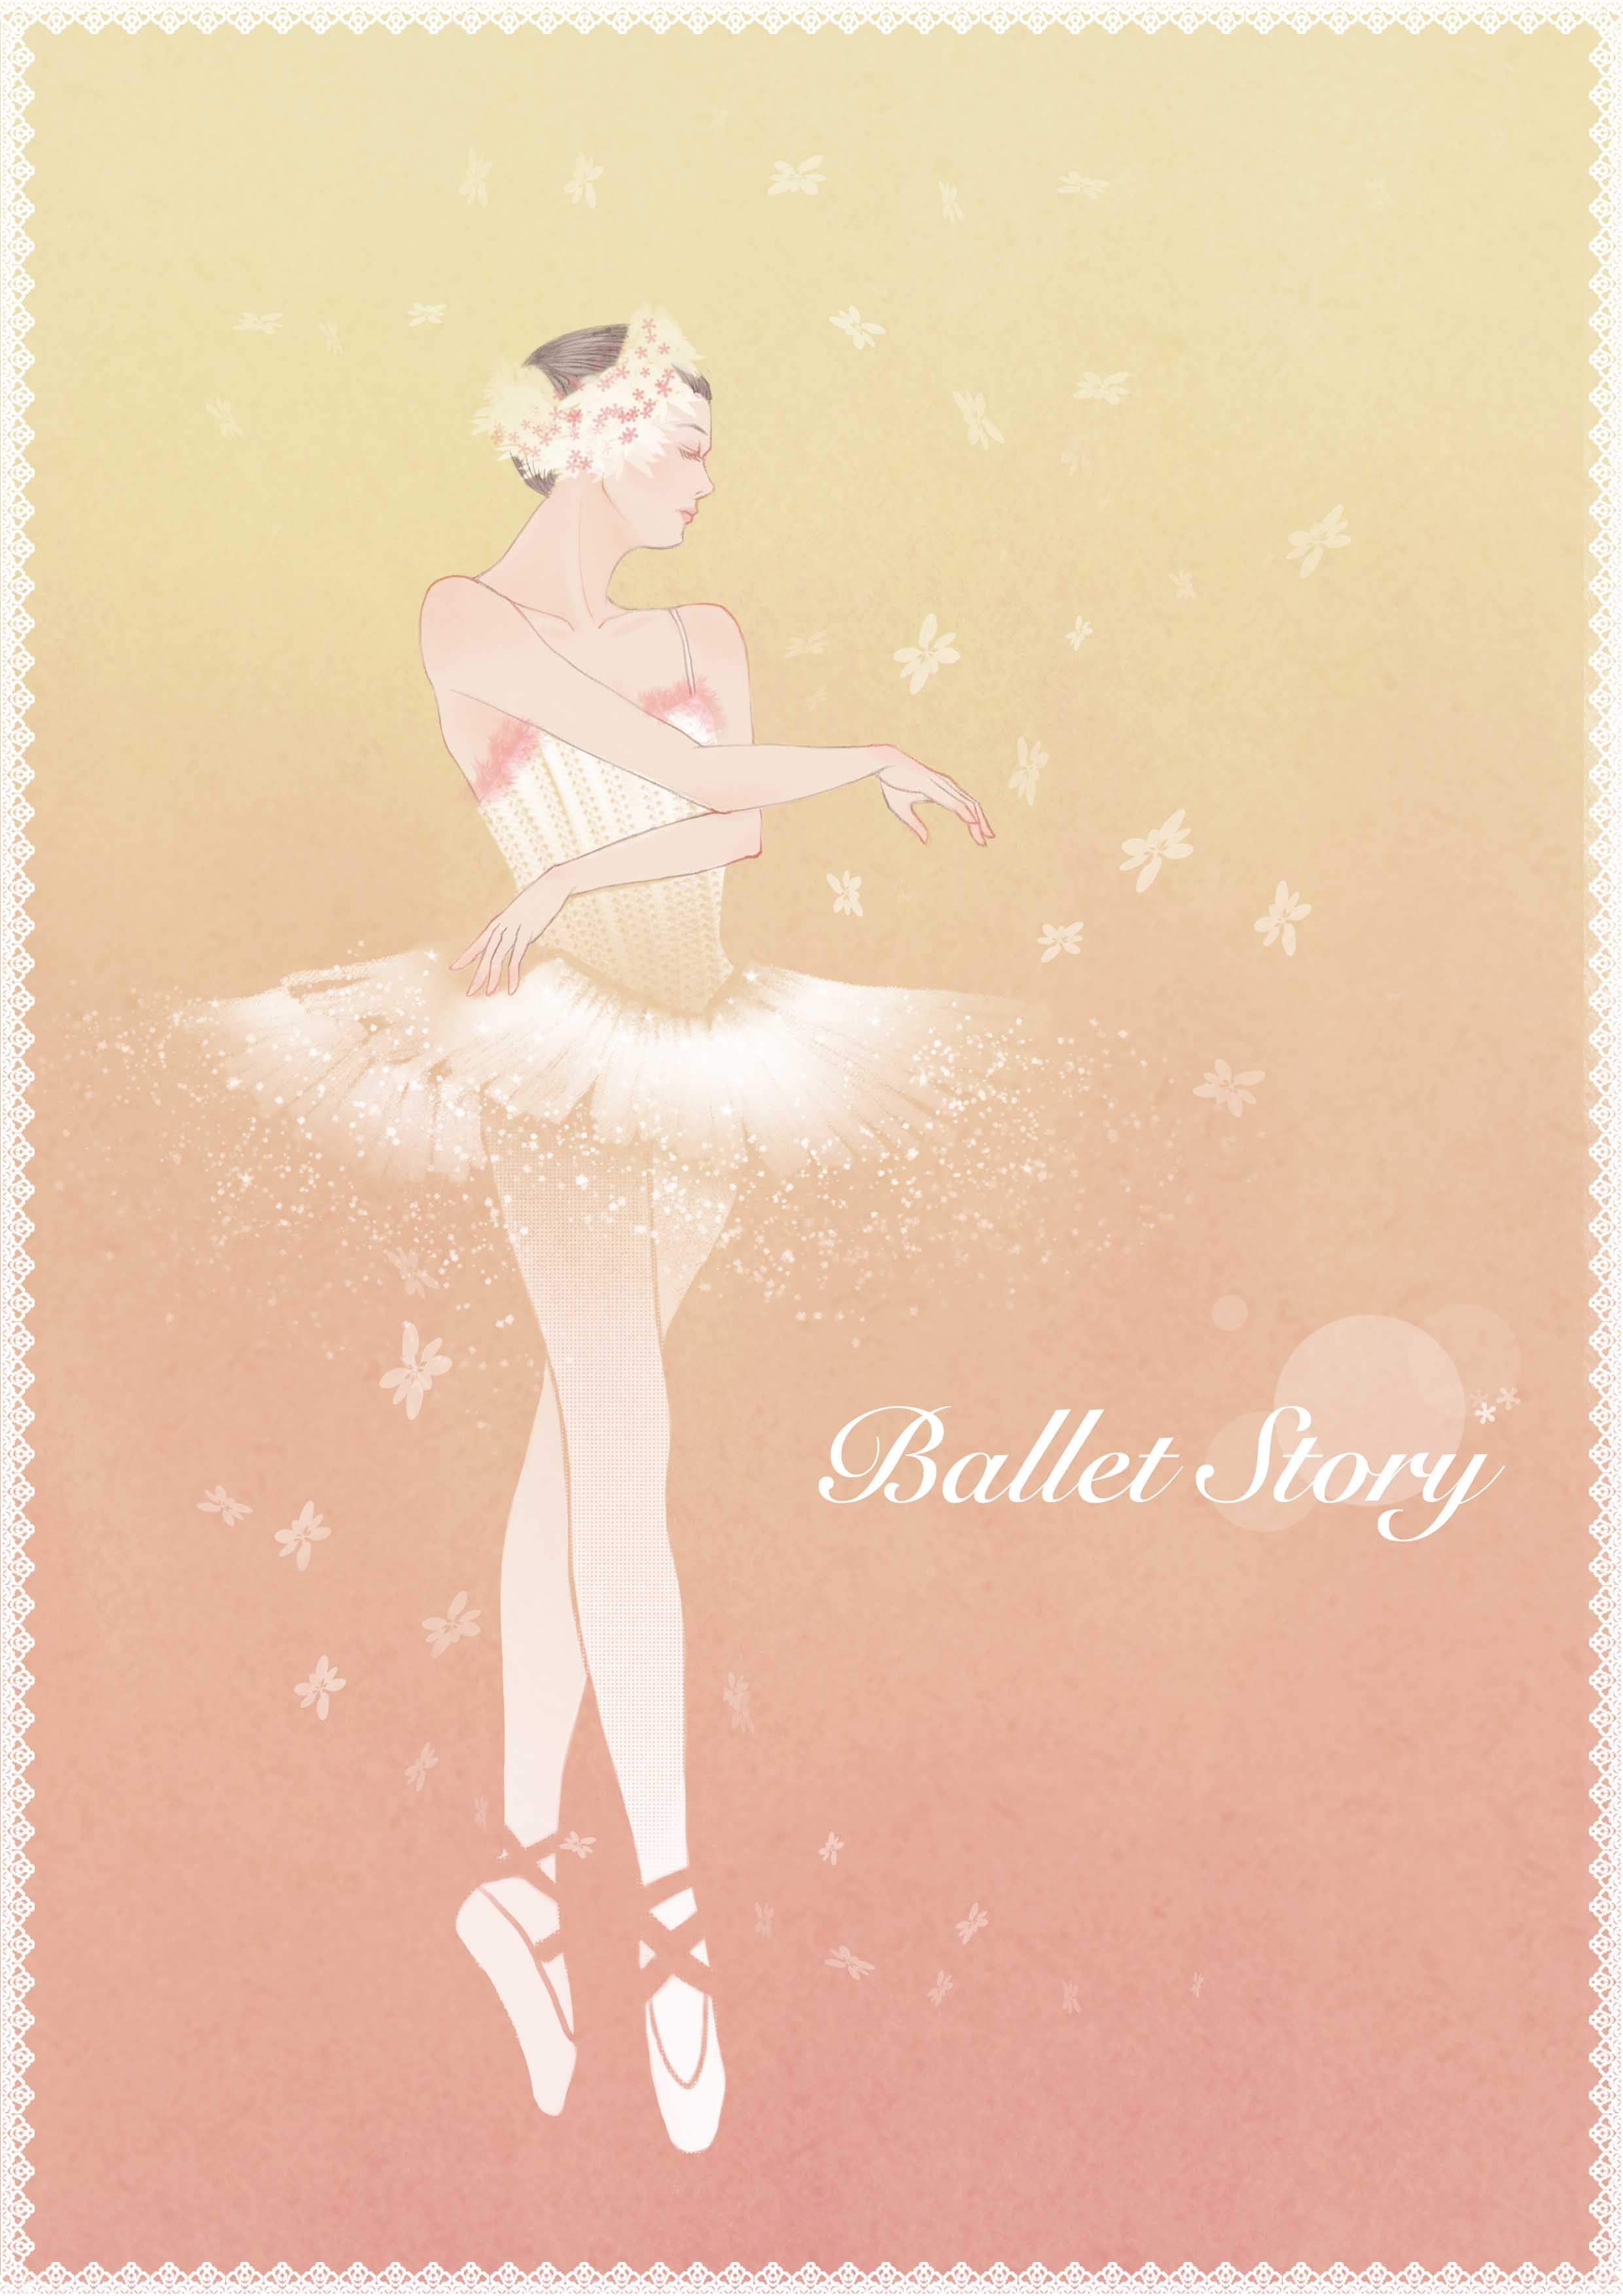 🩰 芭蕾舞鞋 Emoji圖片下載: 高清大圖、動畫圖像和矢量圖形 | EmojiAll